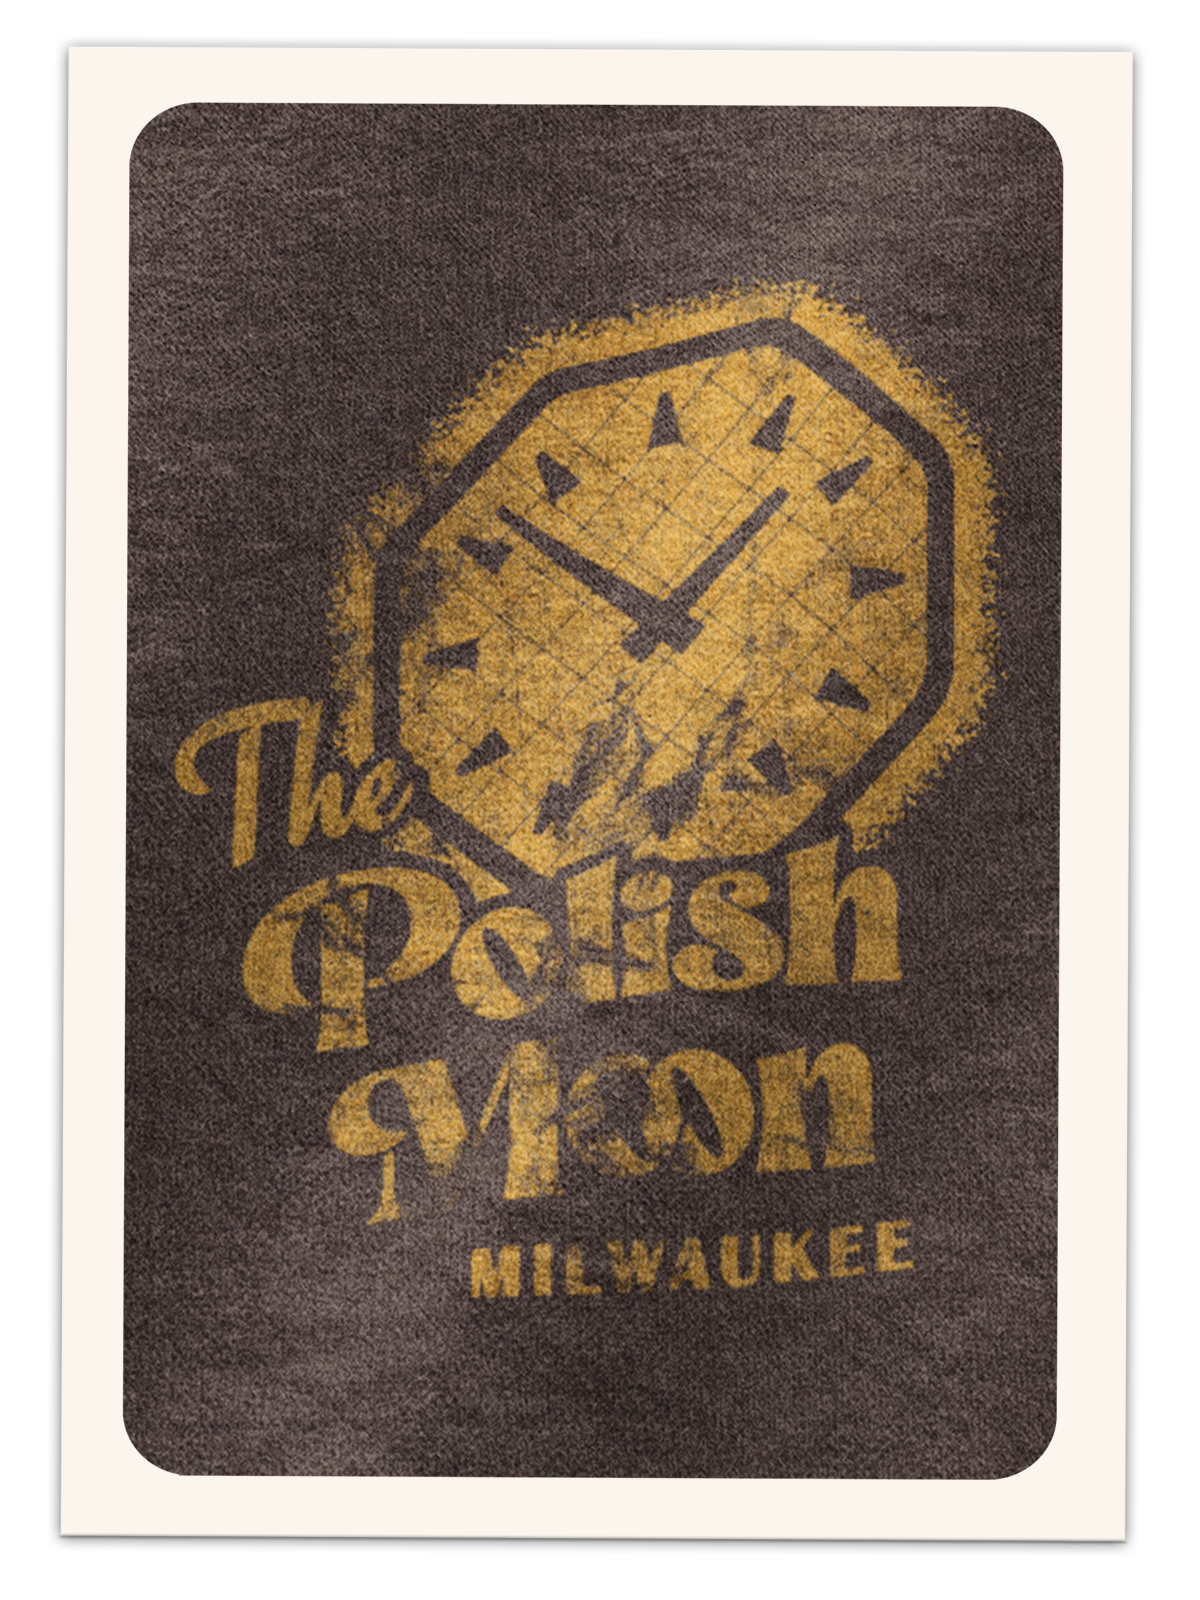 The Polish Moon, Milwaukee Adult Tee